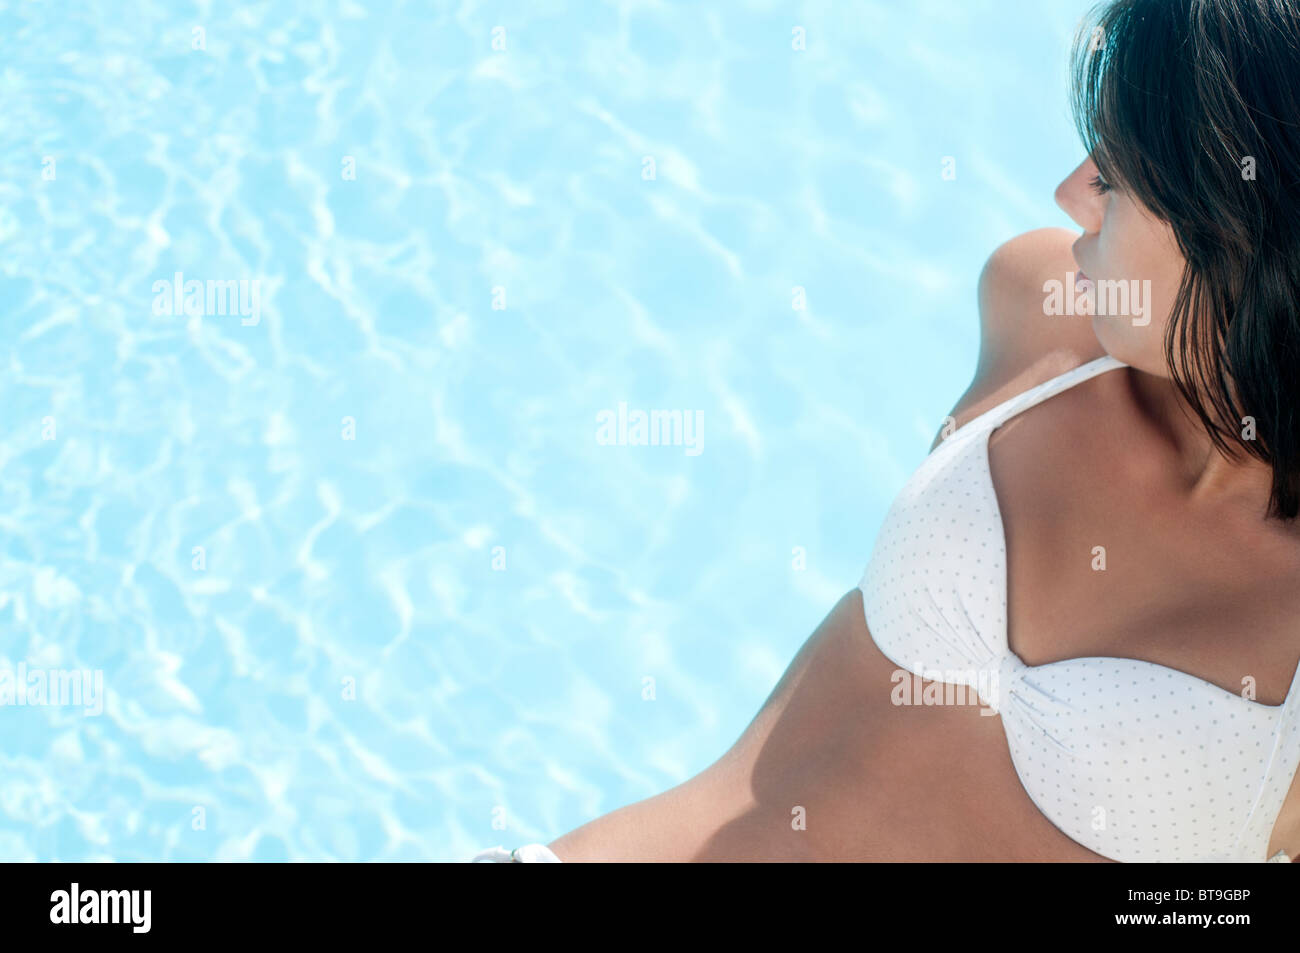 Une jeune femme en bikini blanc assis au bord d'une piscine Banque D'Images